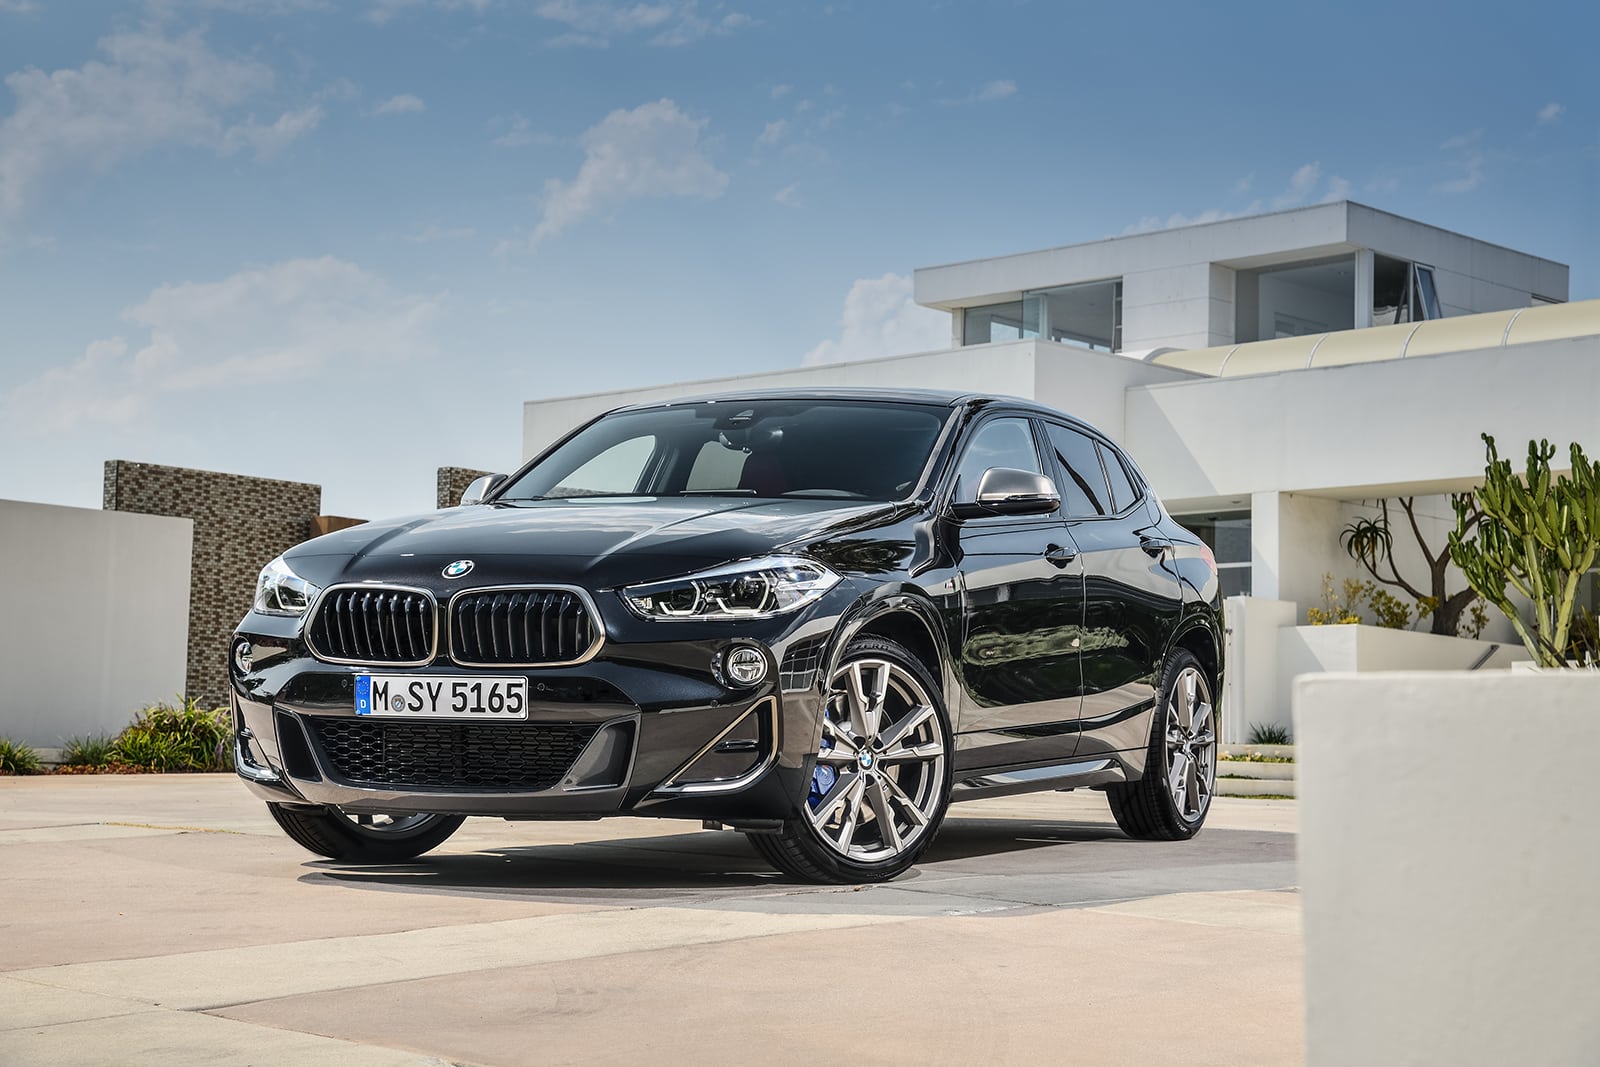 Rodina M sa rozširuje: Prichádza nové BMW X2 M35i, no má len 4 valce